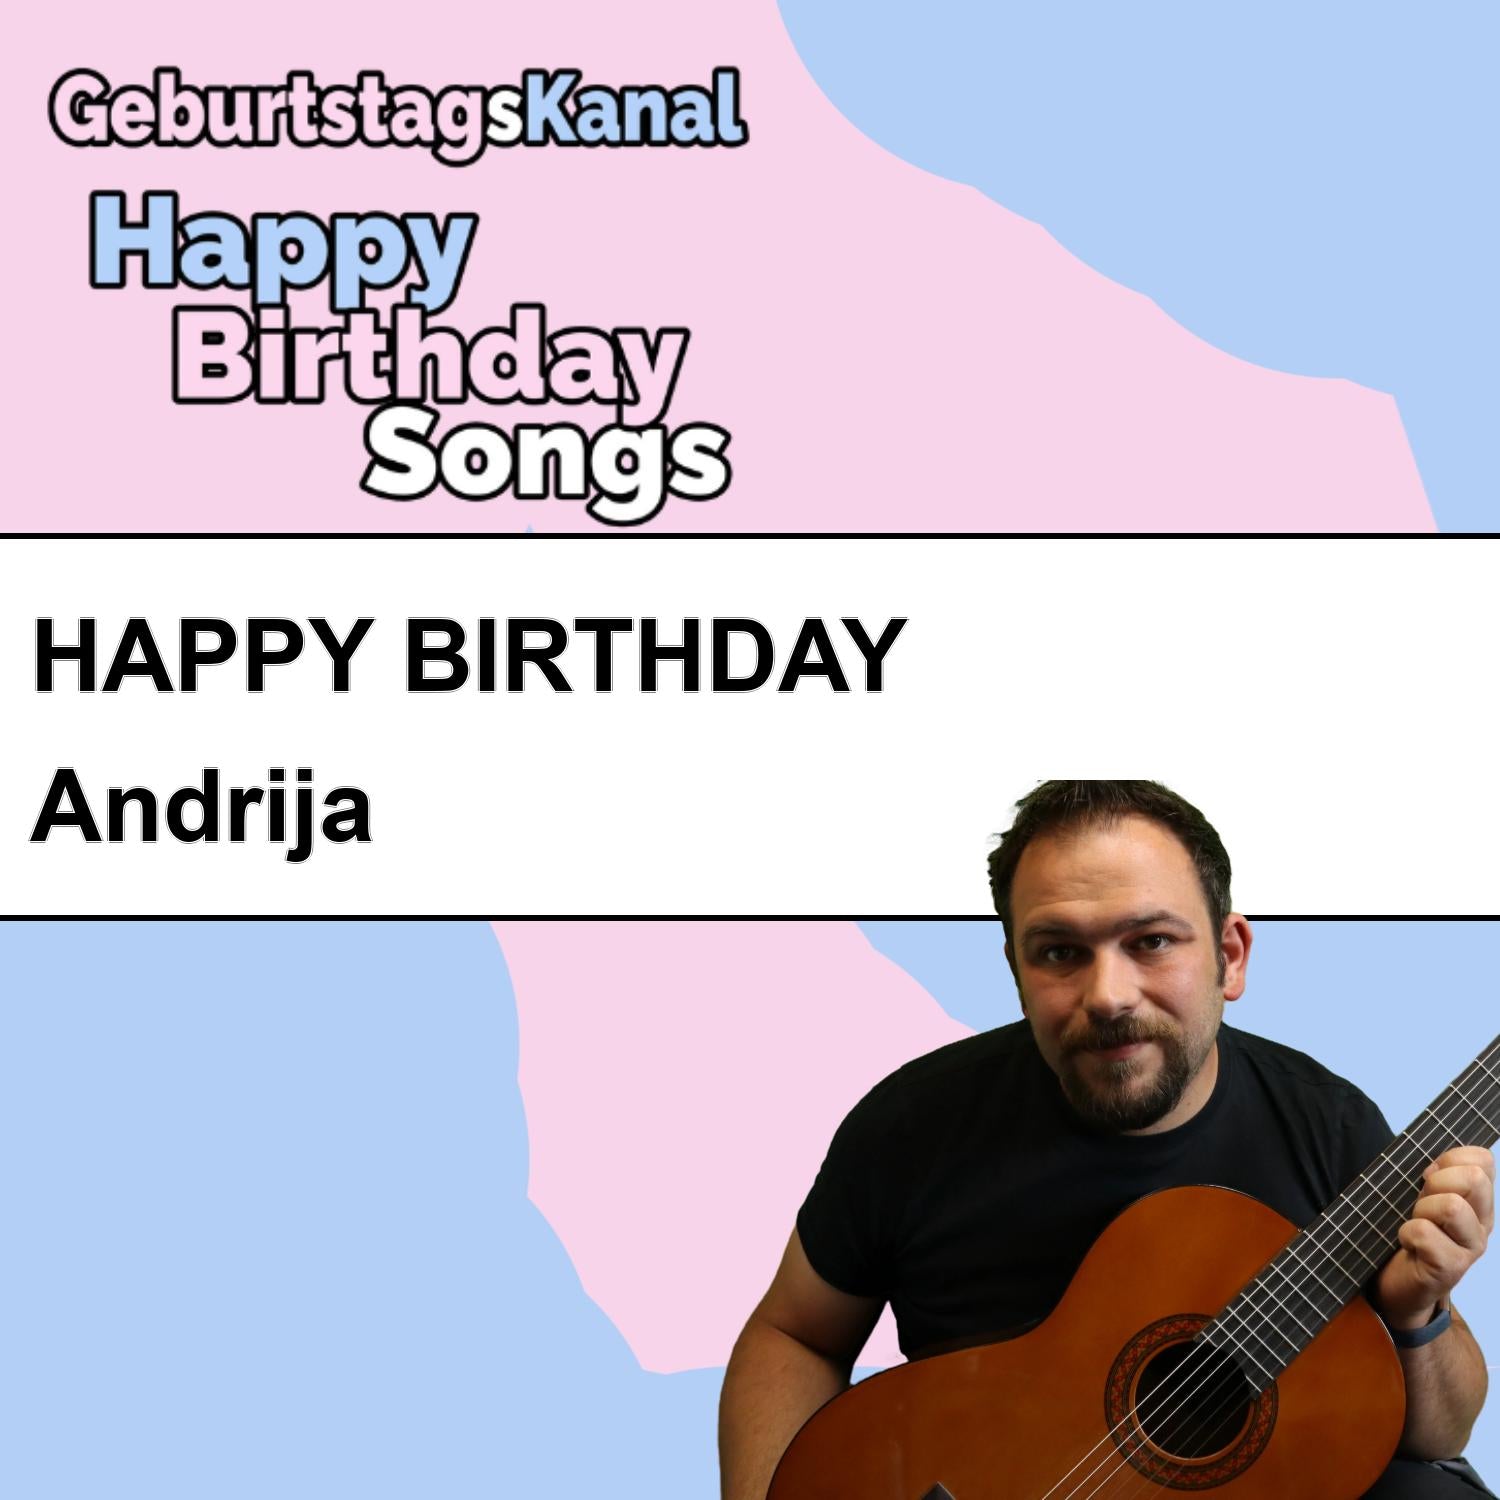 Produktbild Happy Birthday to you Andrija mit Wunschgrußbotschaft